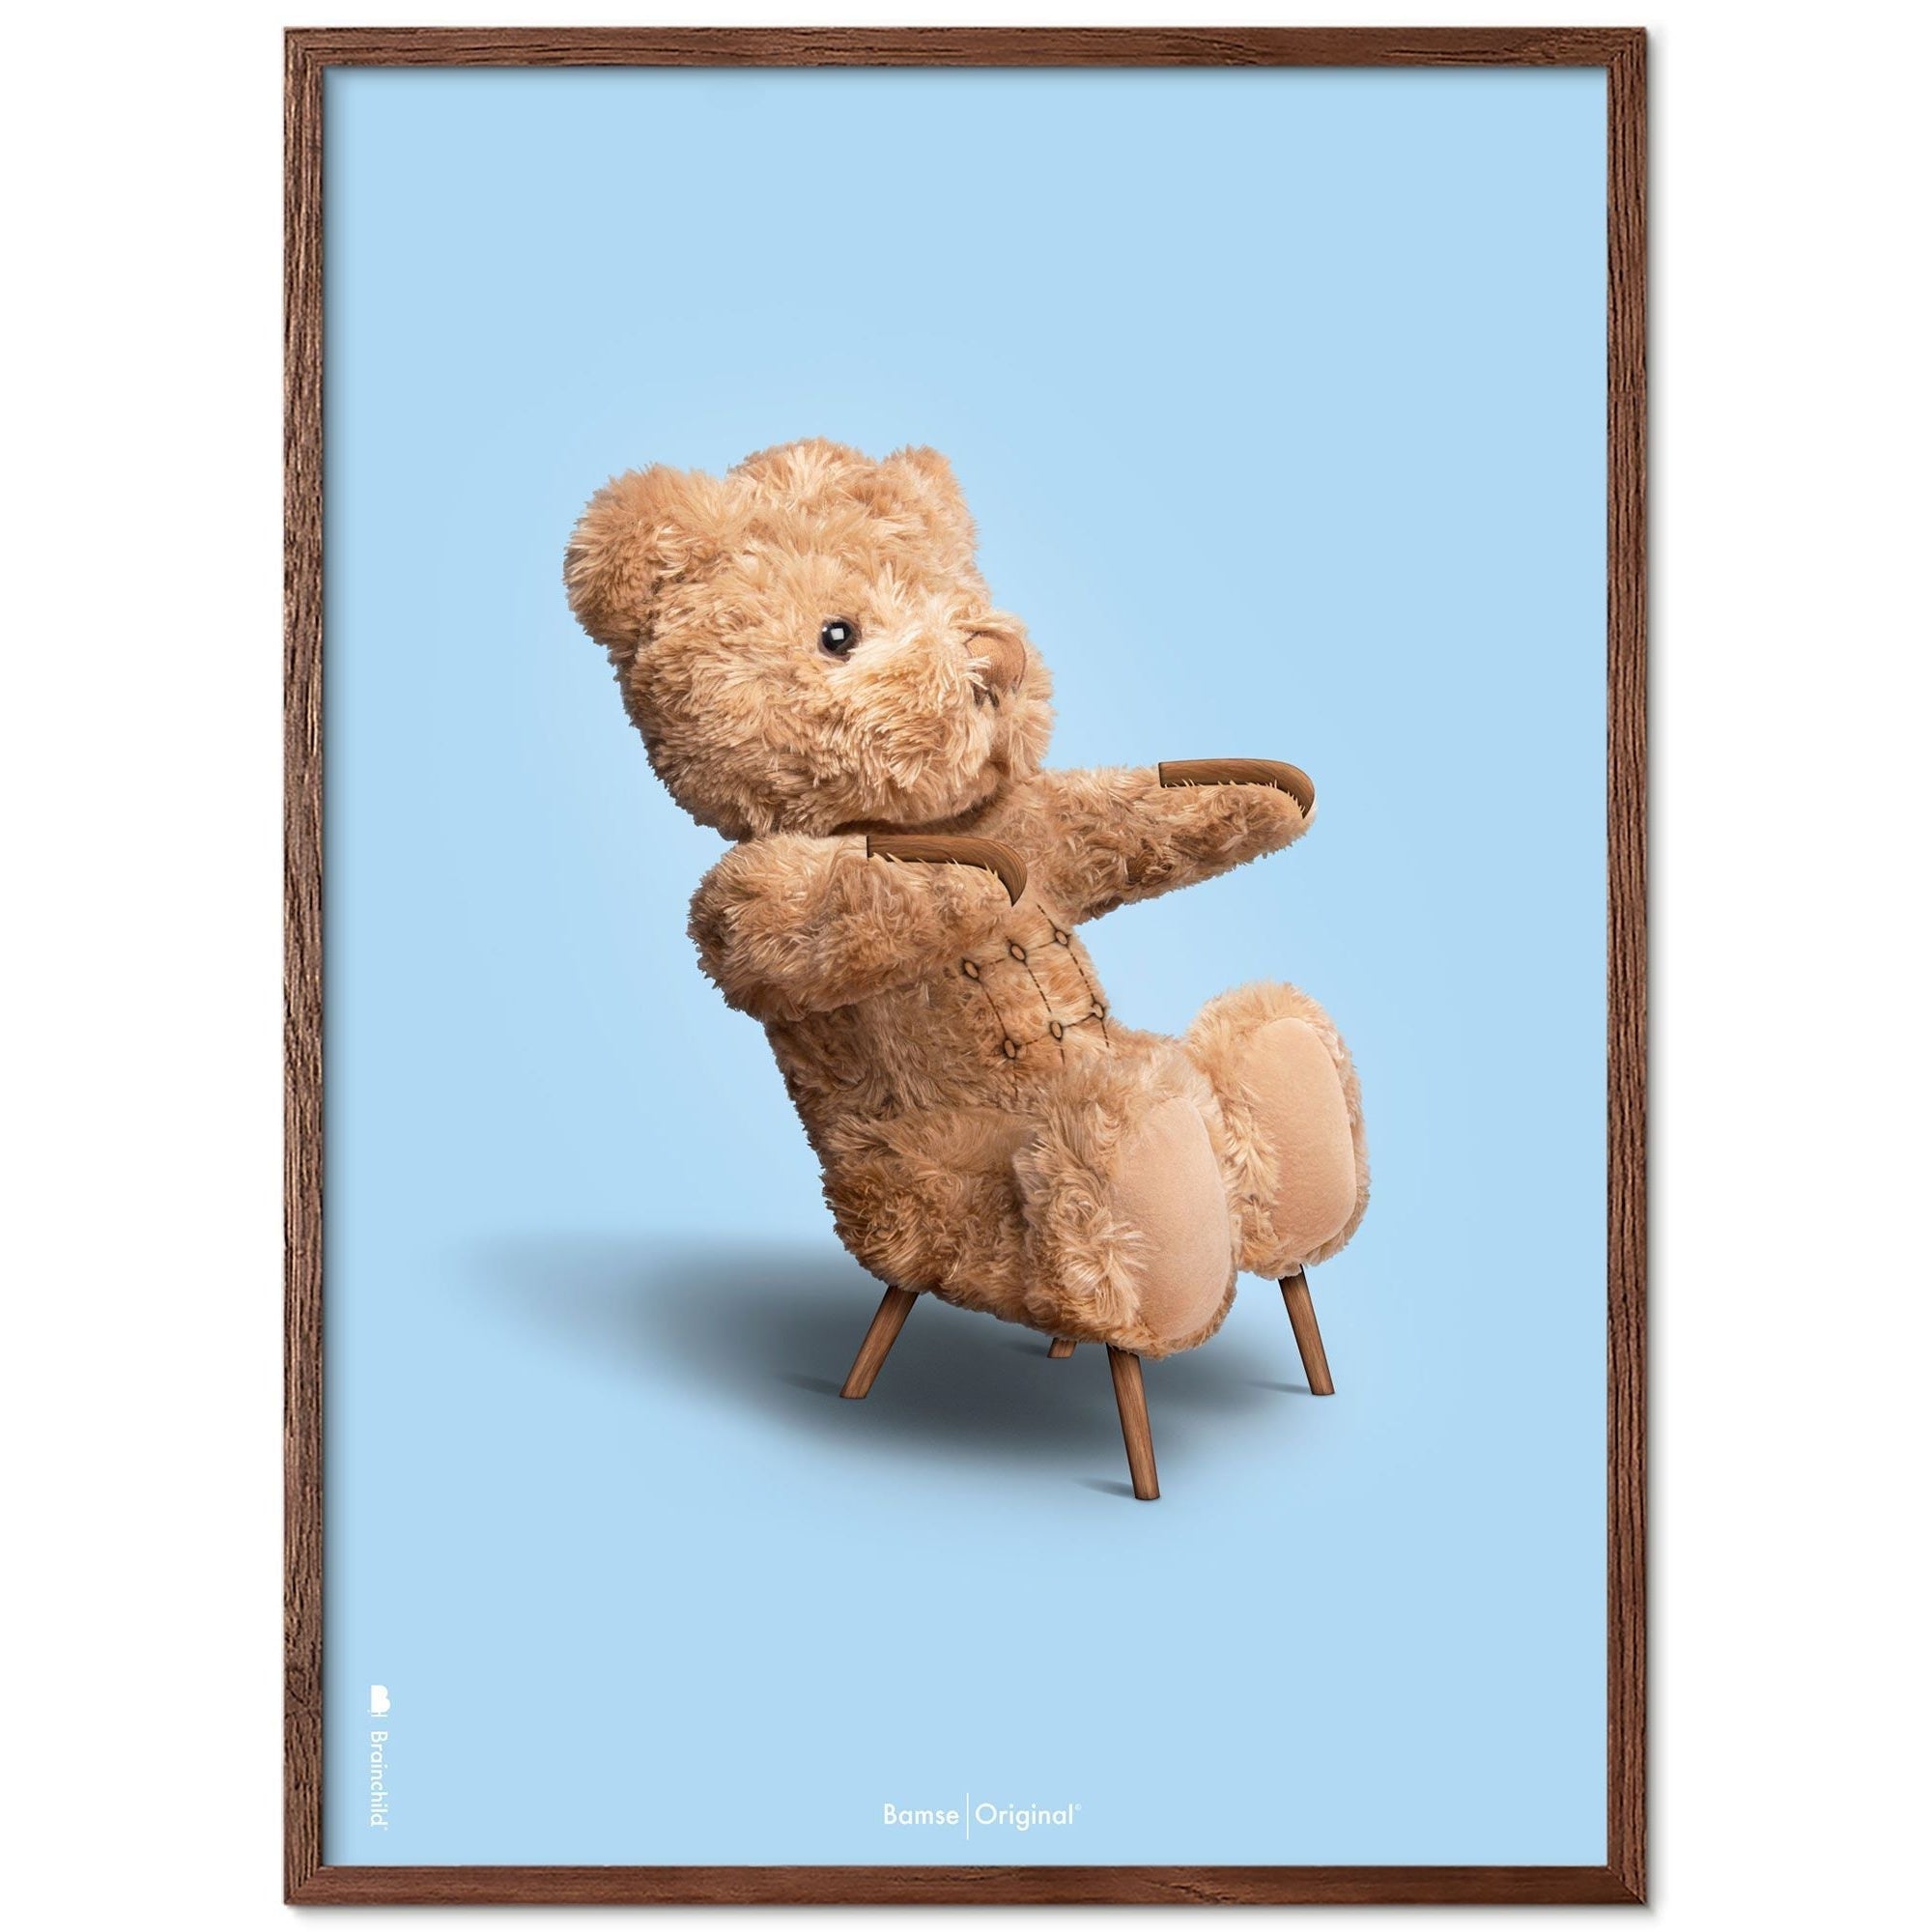 Brainchild Teddy Bear Classic plakát z plakátu vyrobený z tmavého dřeva RAM 30x40 cm, světle modré pozadí